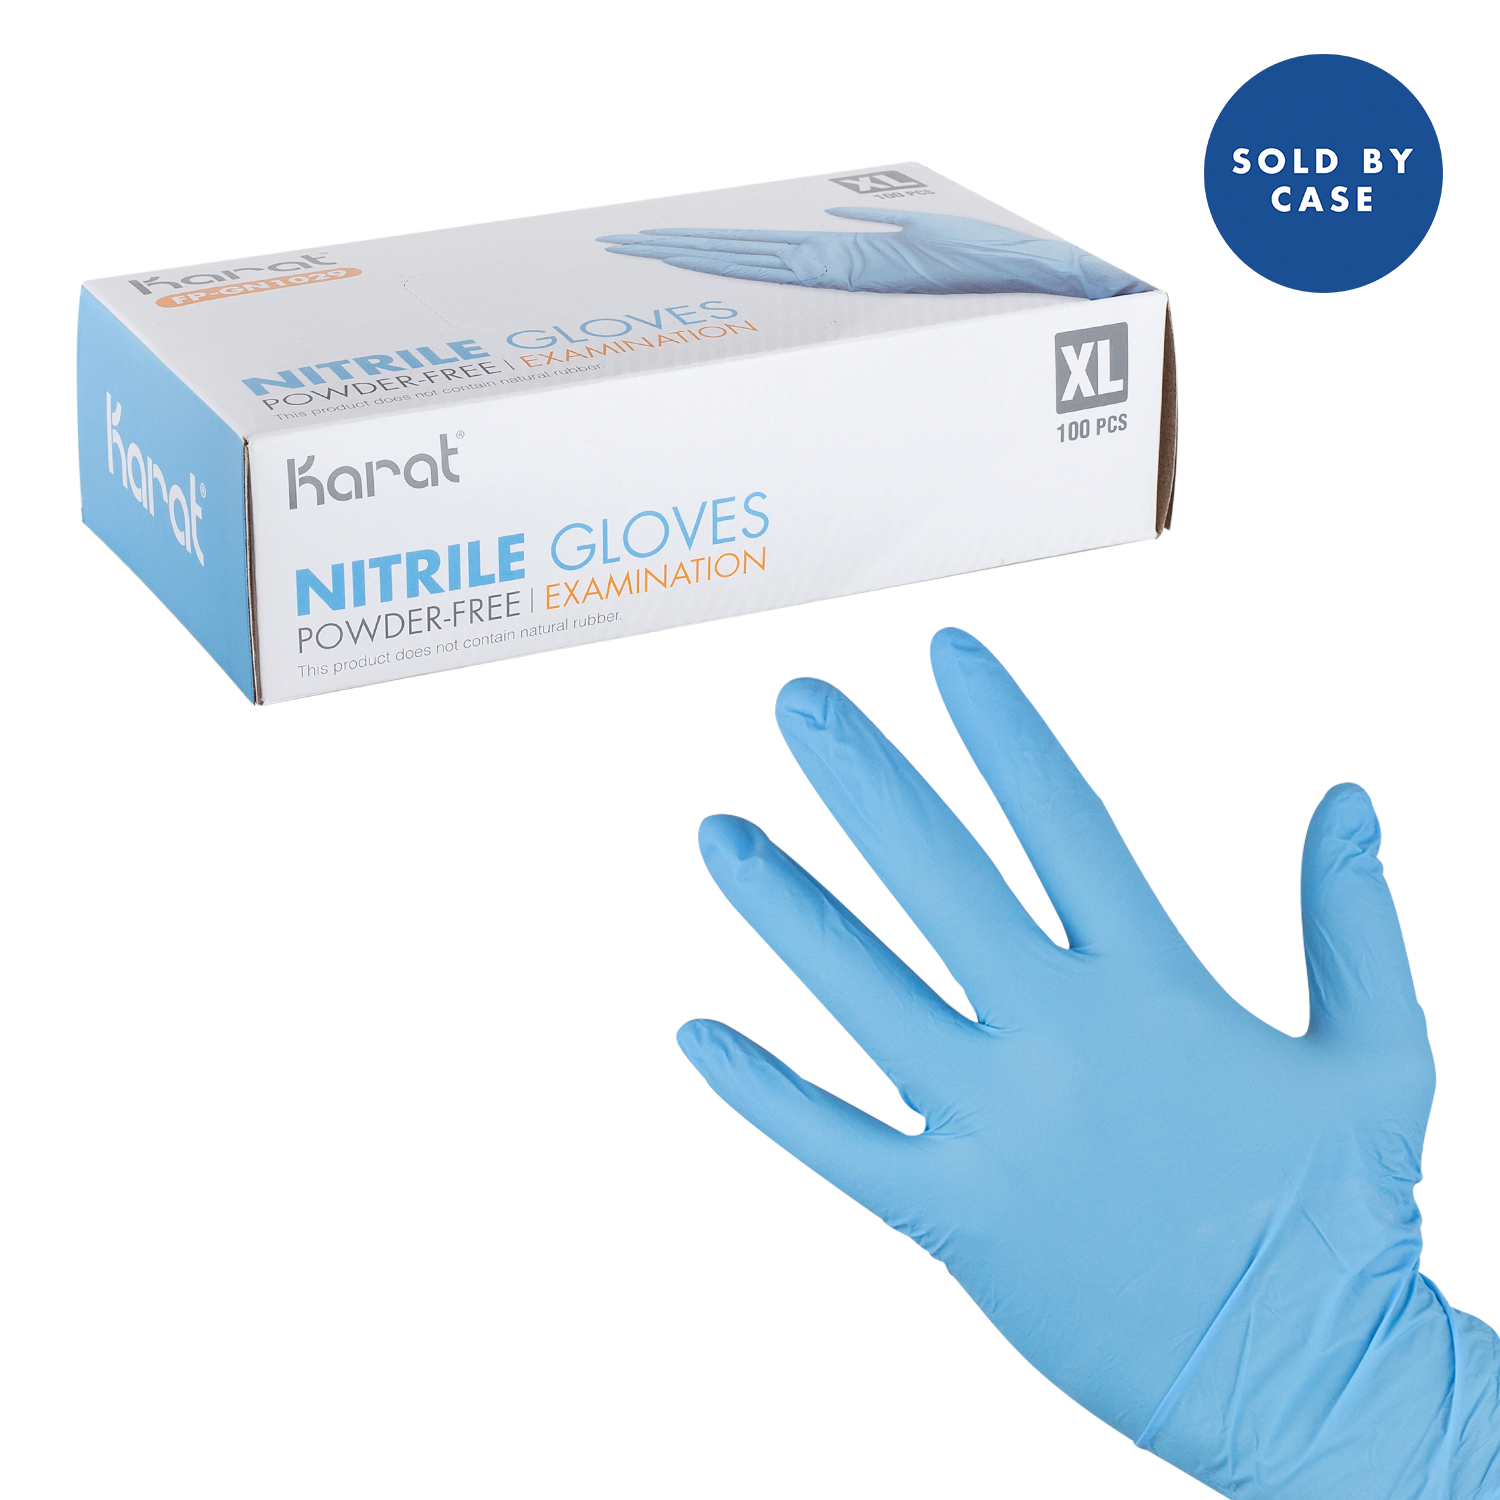 Karat Nitrile Powder-Free Gloves (Blue), X-Large - 1,000 pcs